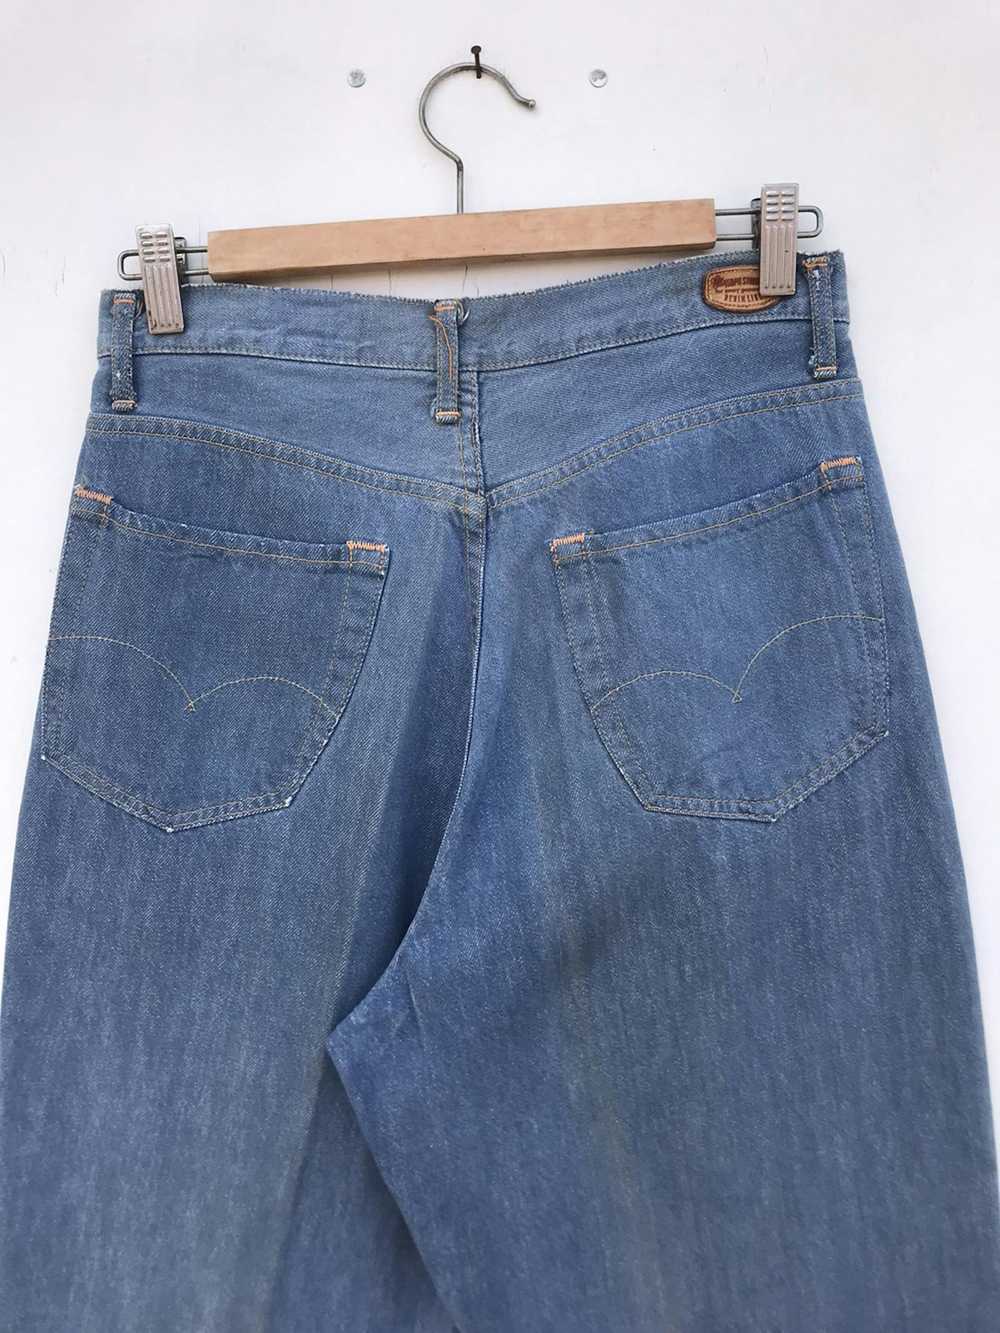 45rpm × Vintage Vintage 45RPM Jeans - image 9